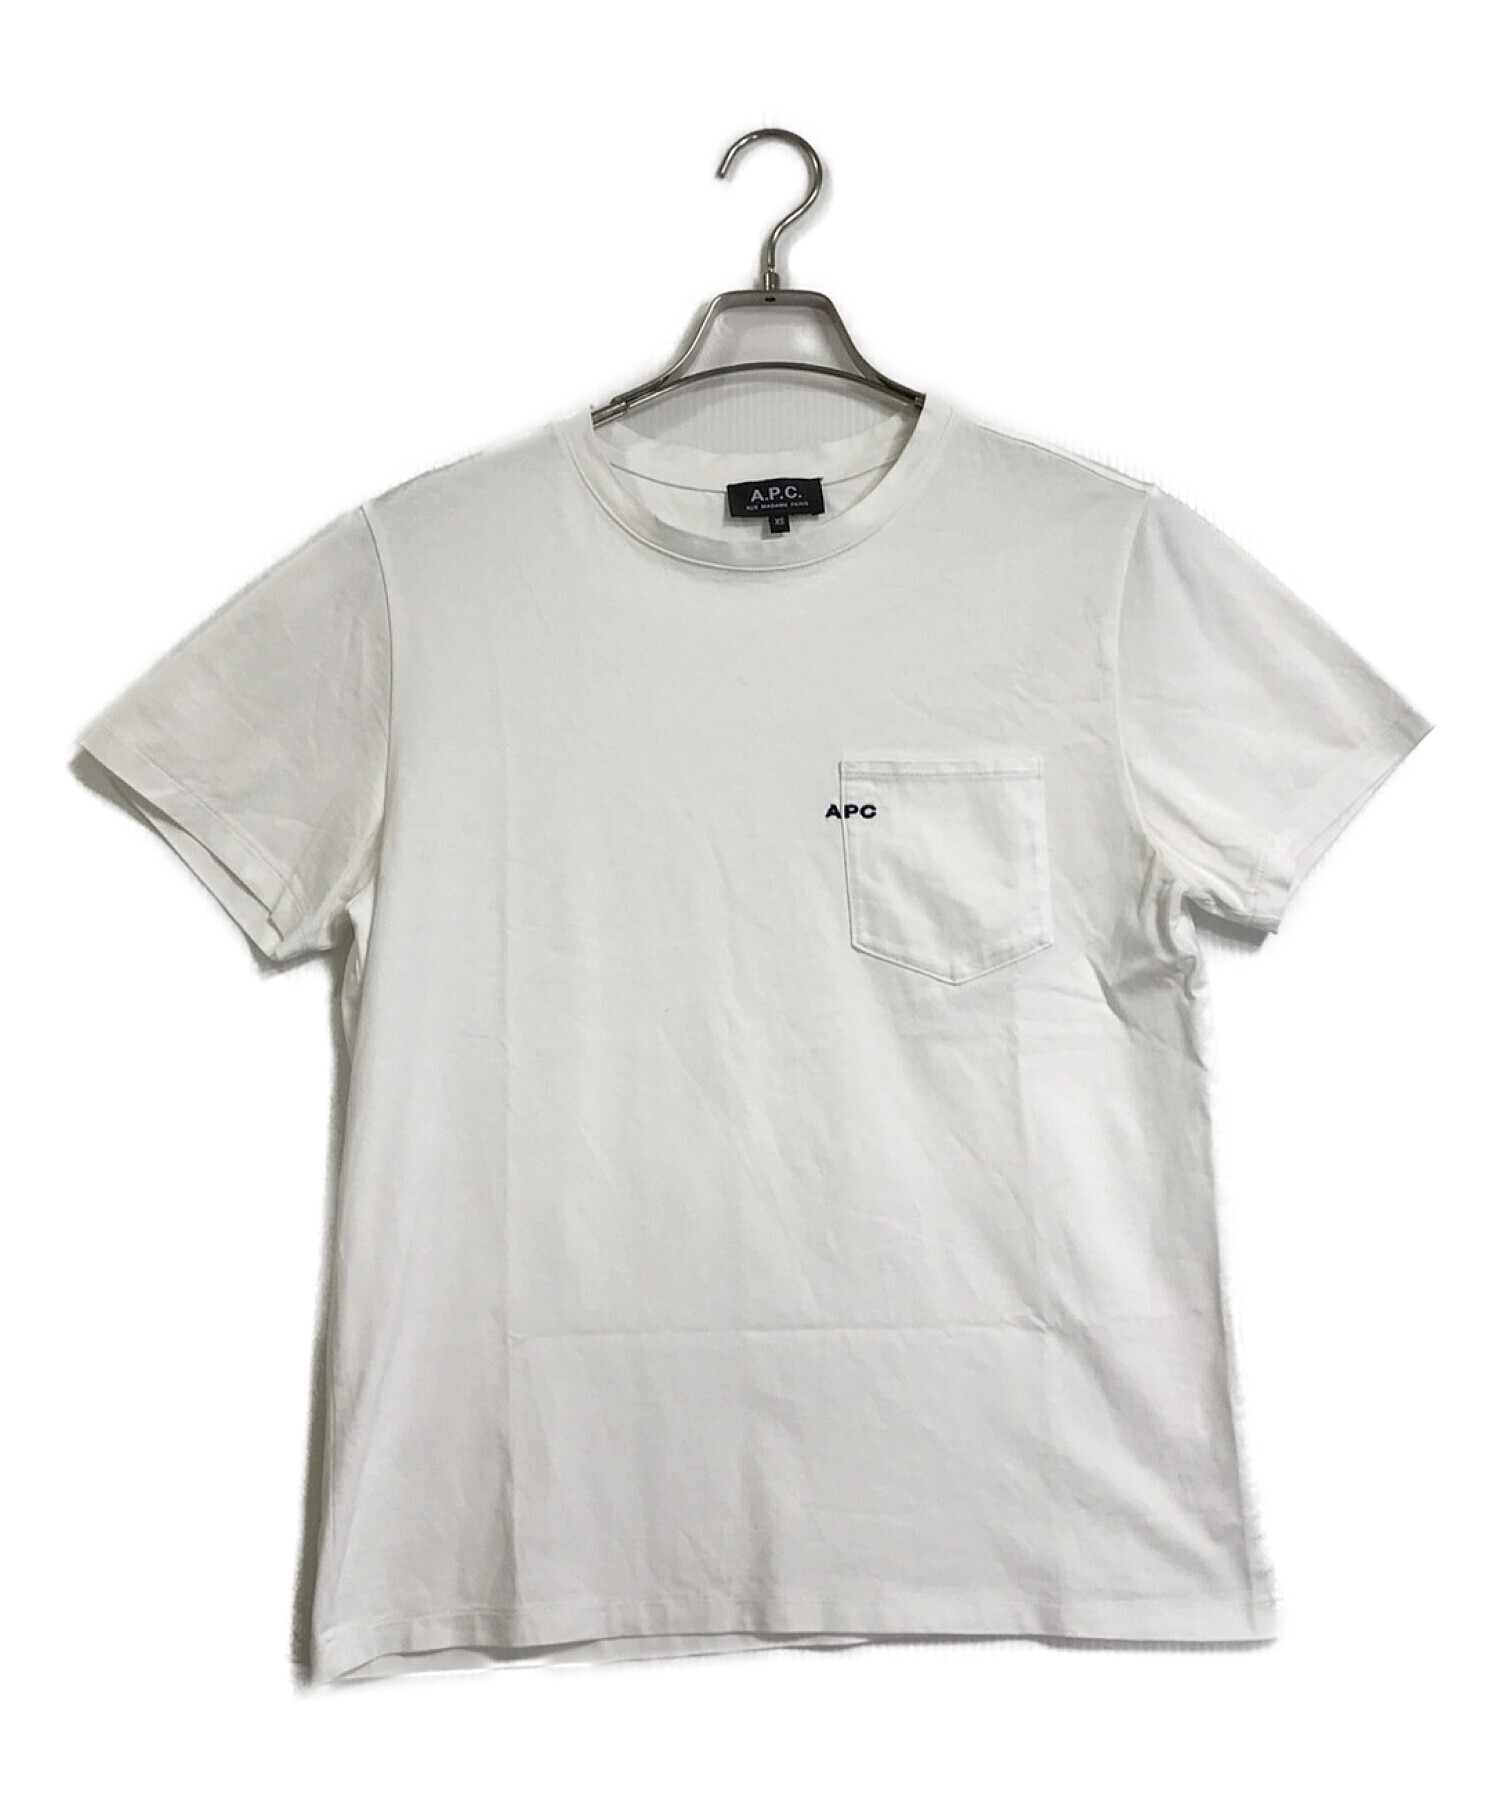 A.P.C. (アー・ペー・セー) 刺繍入りポケットTシャツ ホワイト サイズ:XS